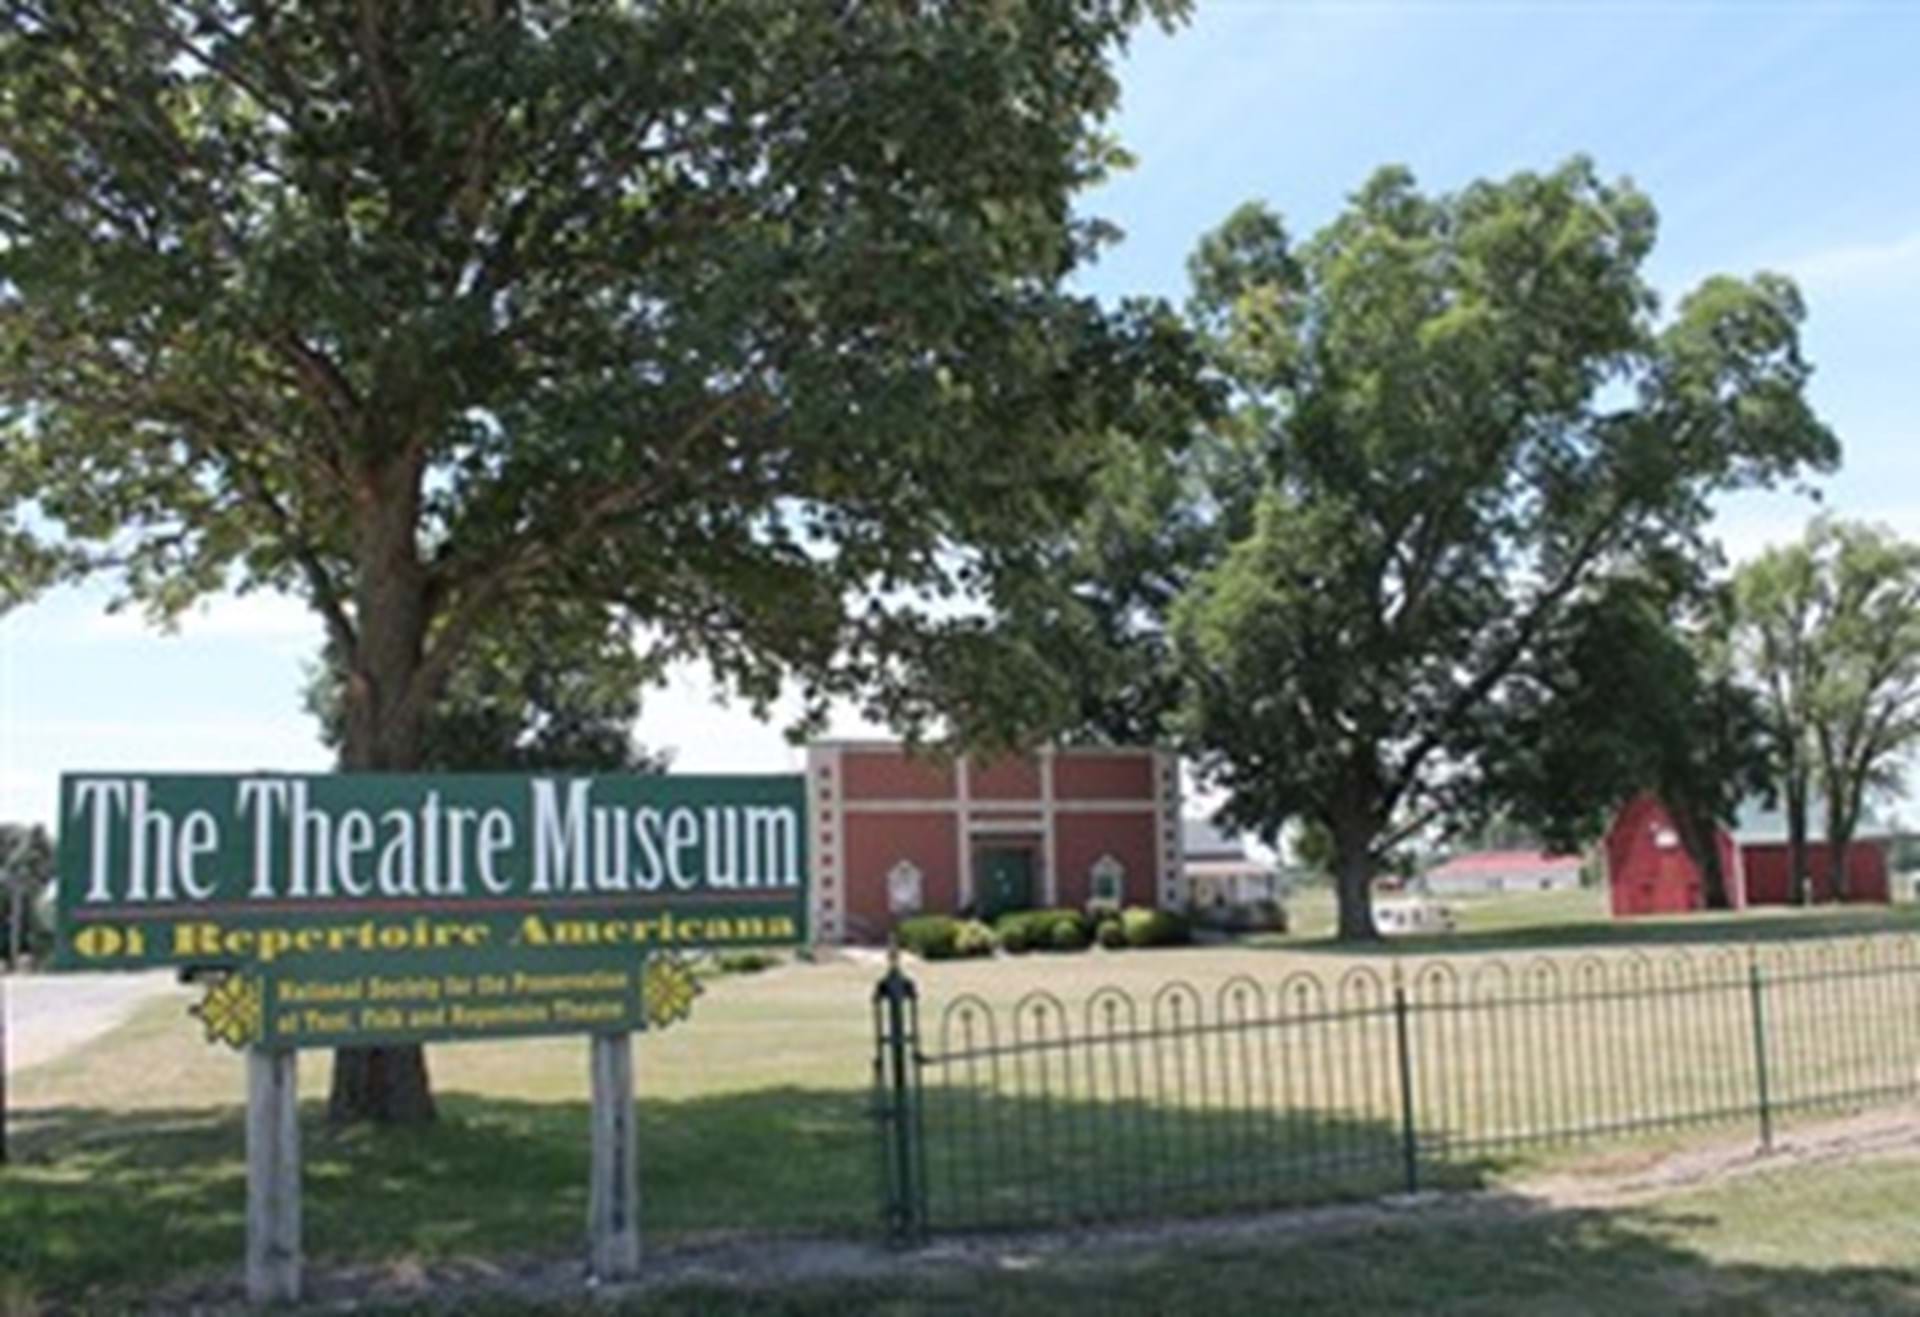 The Theatre Museum of Repertoire Americana